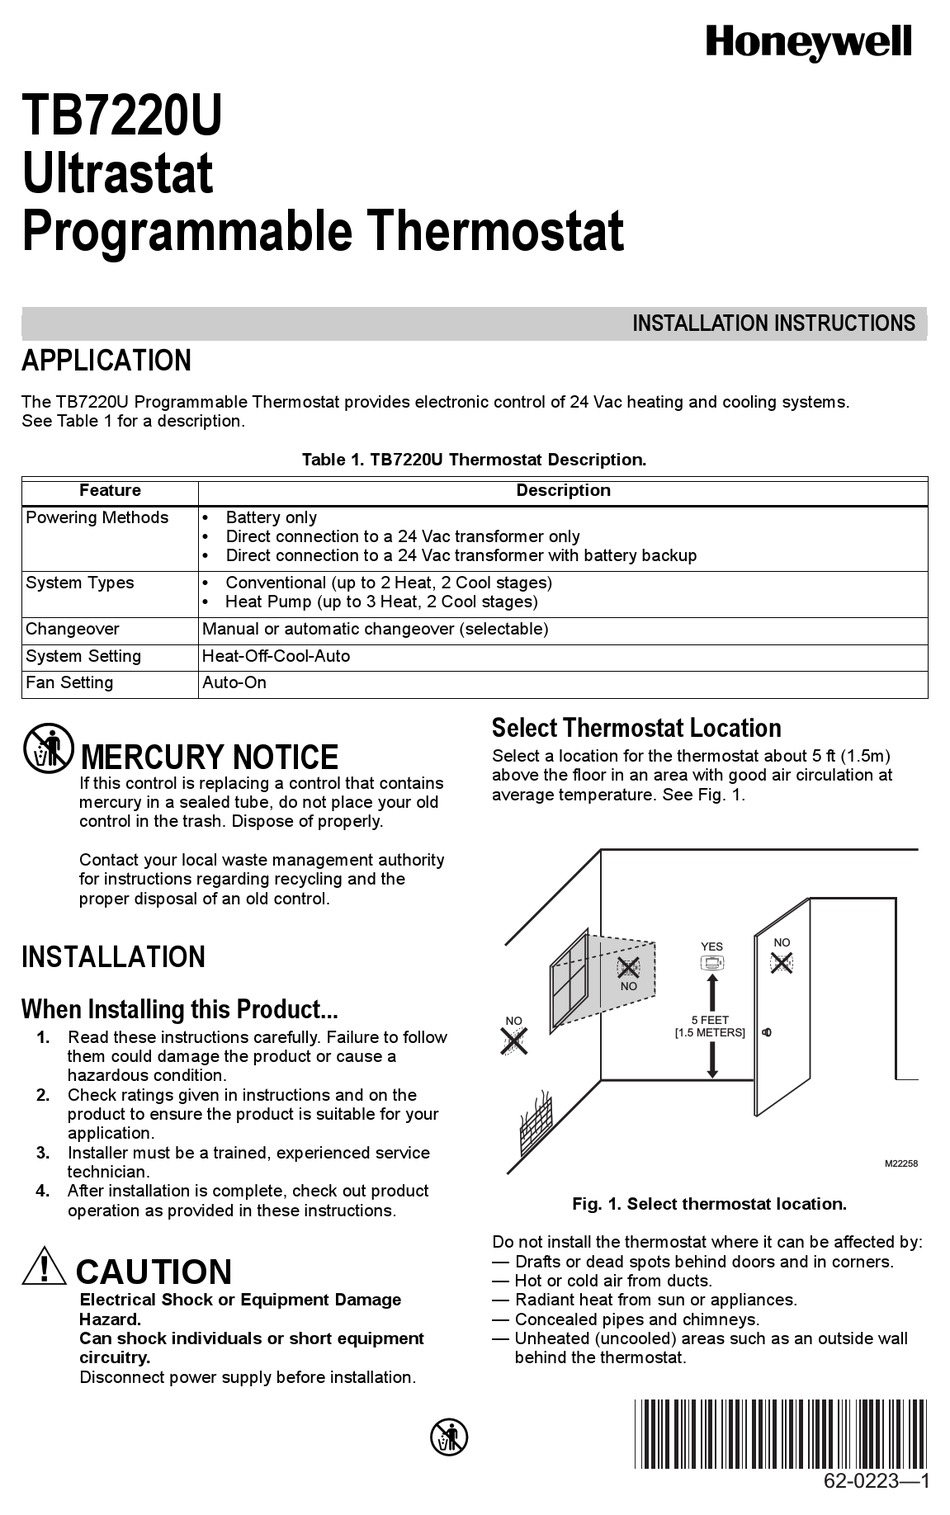 Ultrastat installation manual